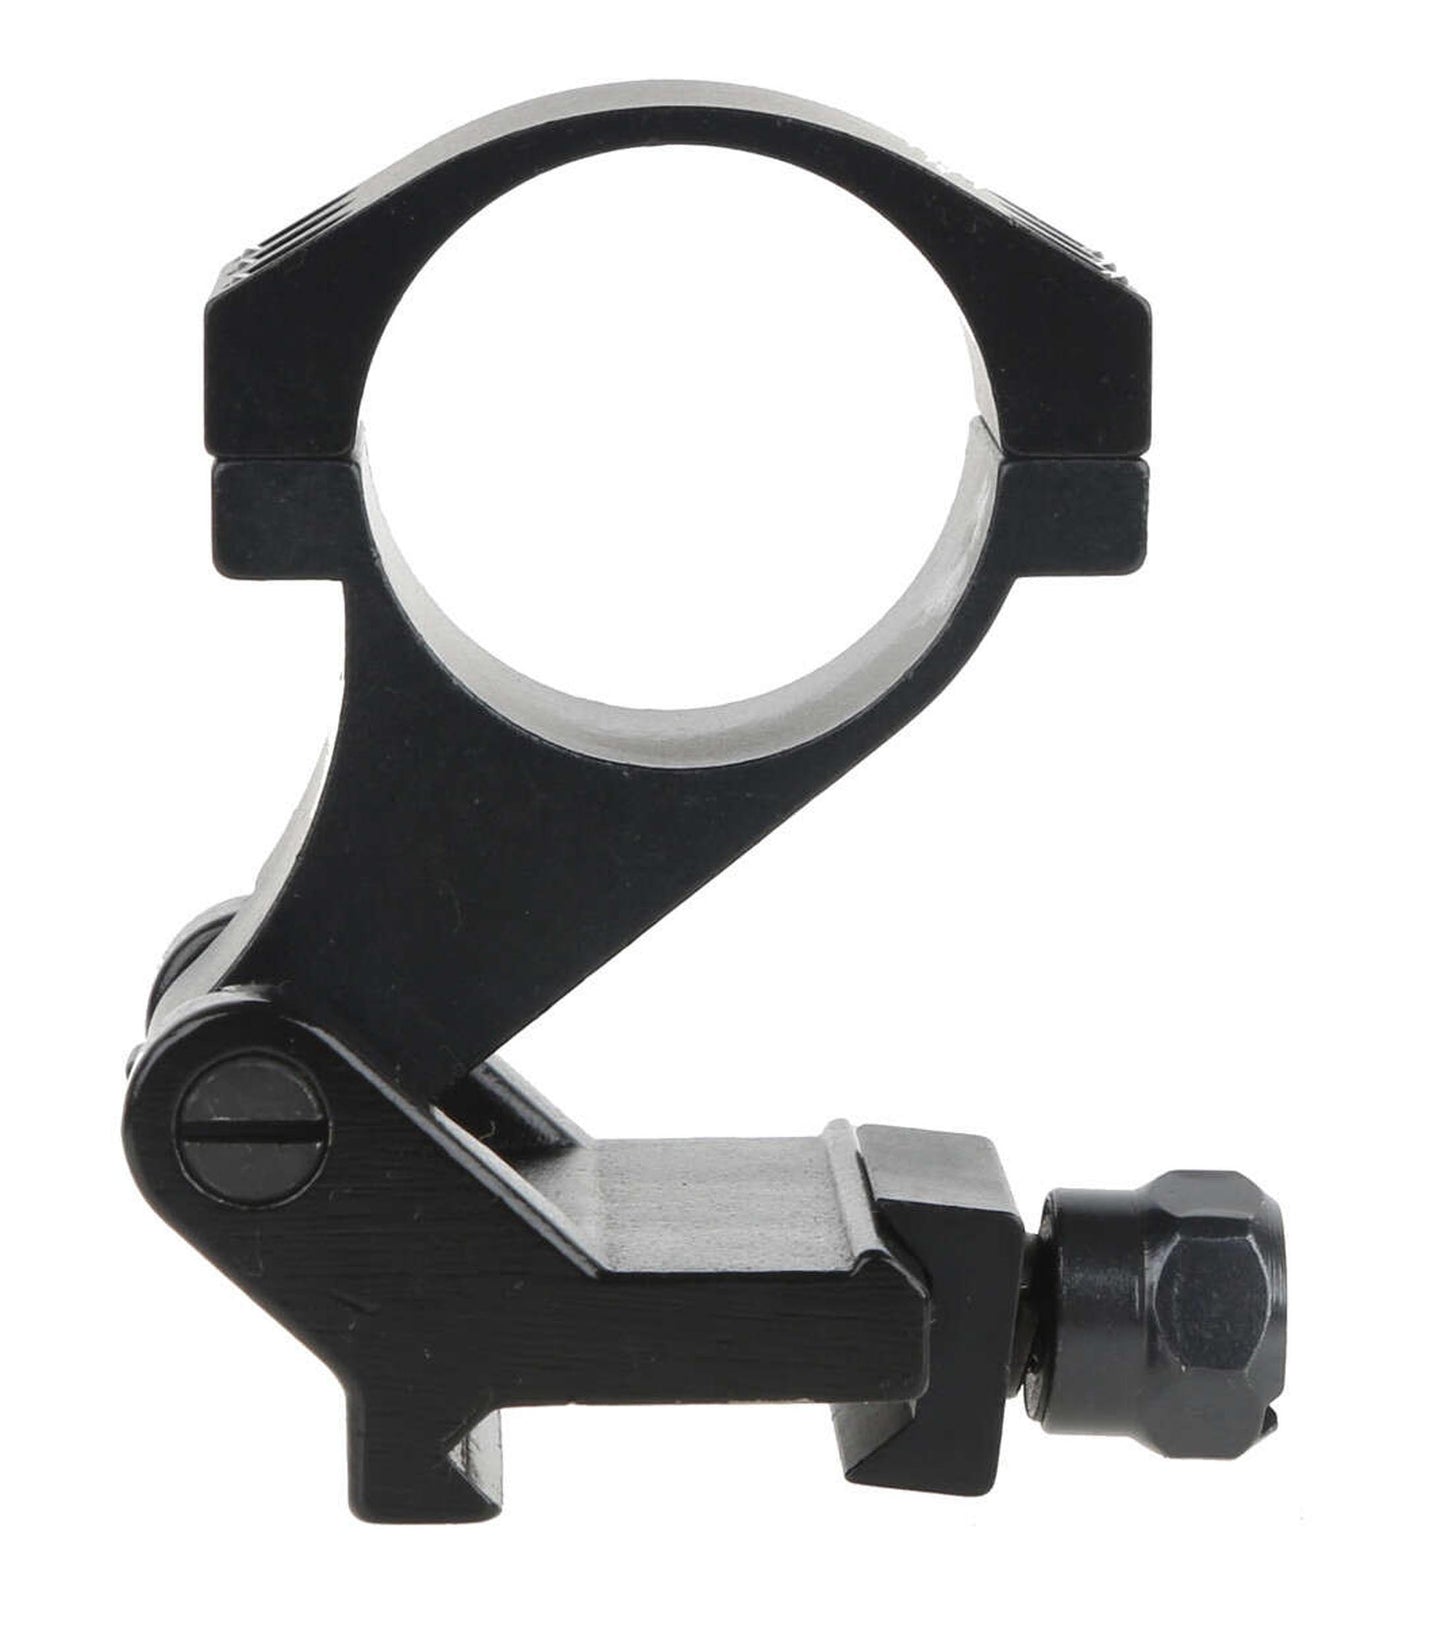 Montage Flip Up latéral diamètre 30 pour Magnifier Primary Arms-T.A DEFENSE